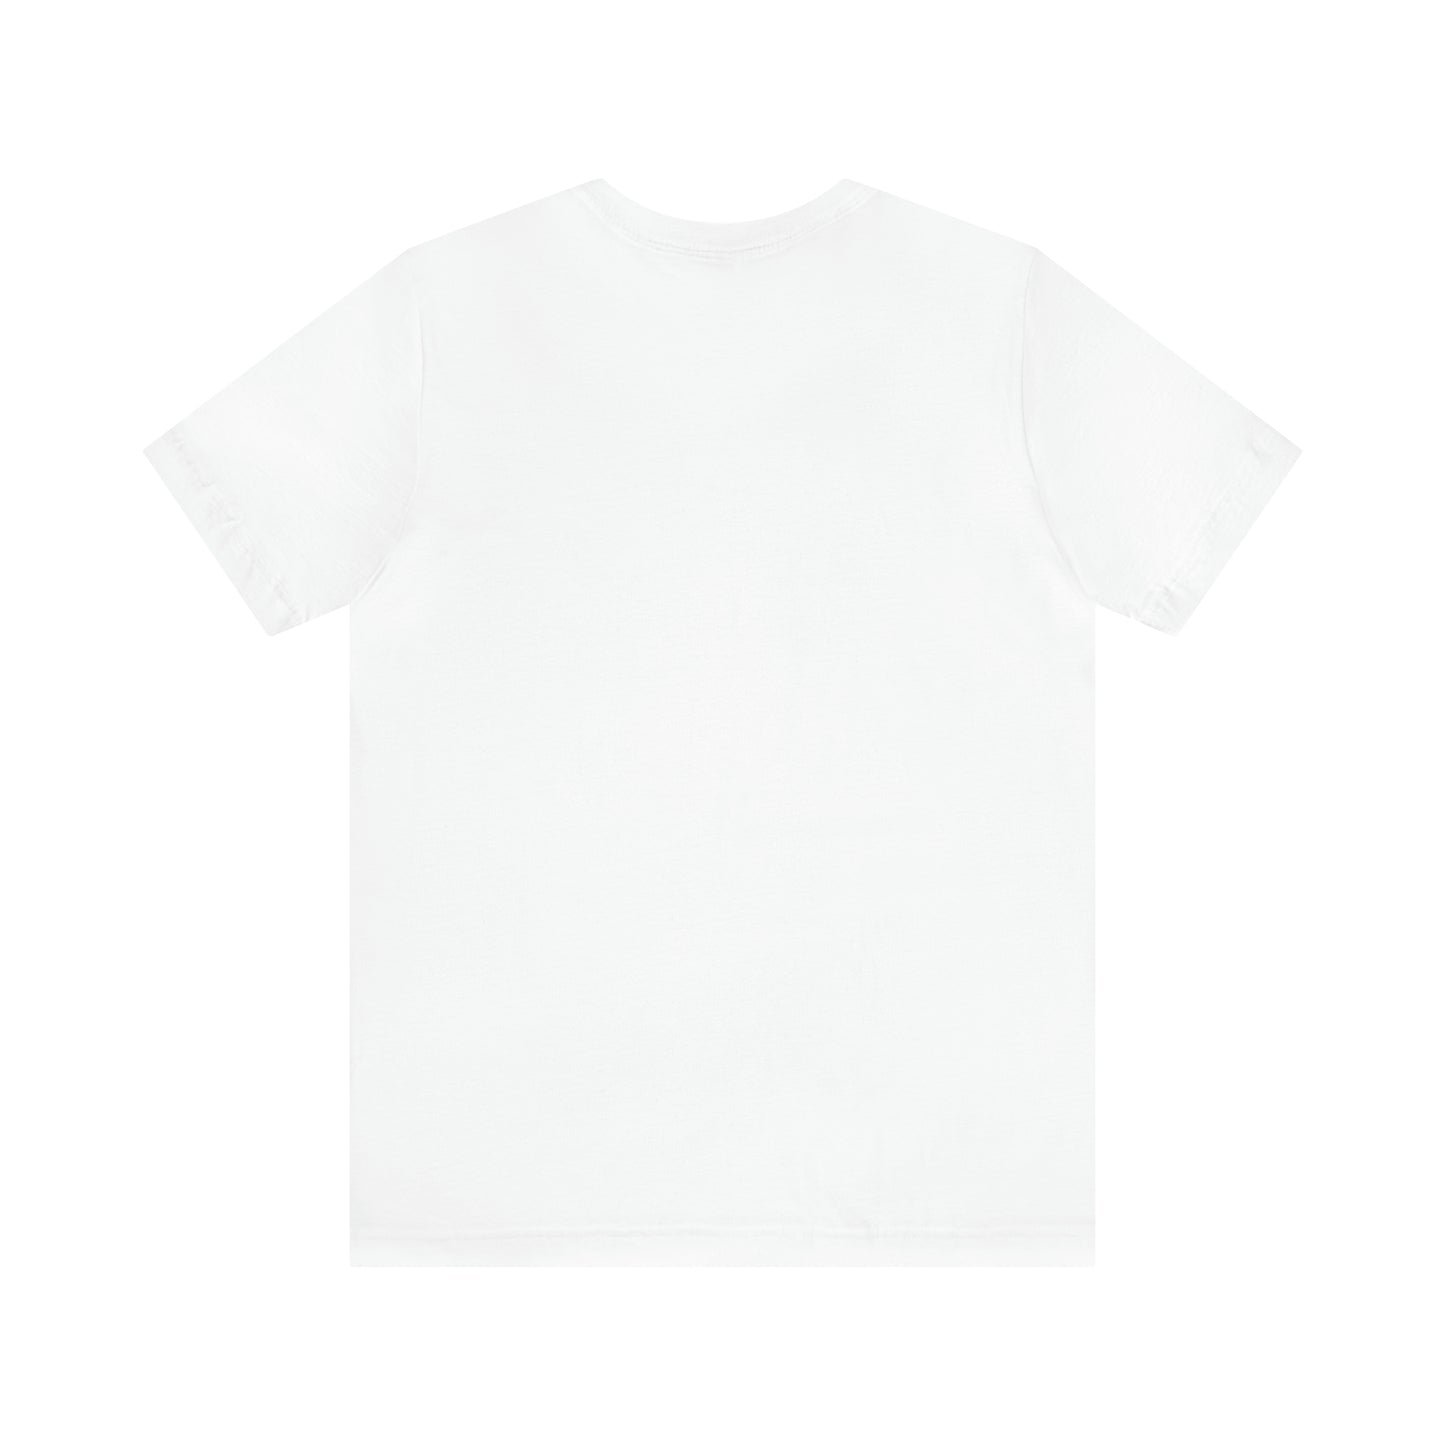 Tryzub Vyshyvanka Color Unisex T-Shirt